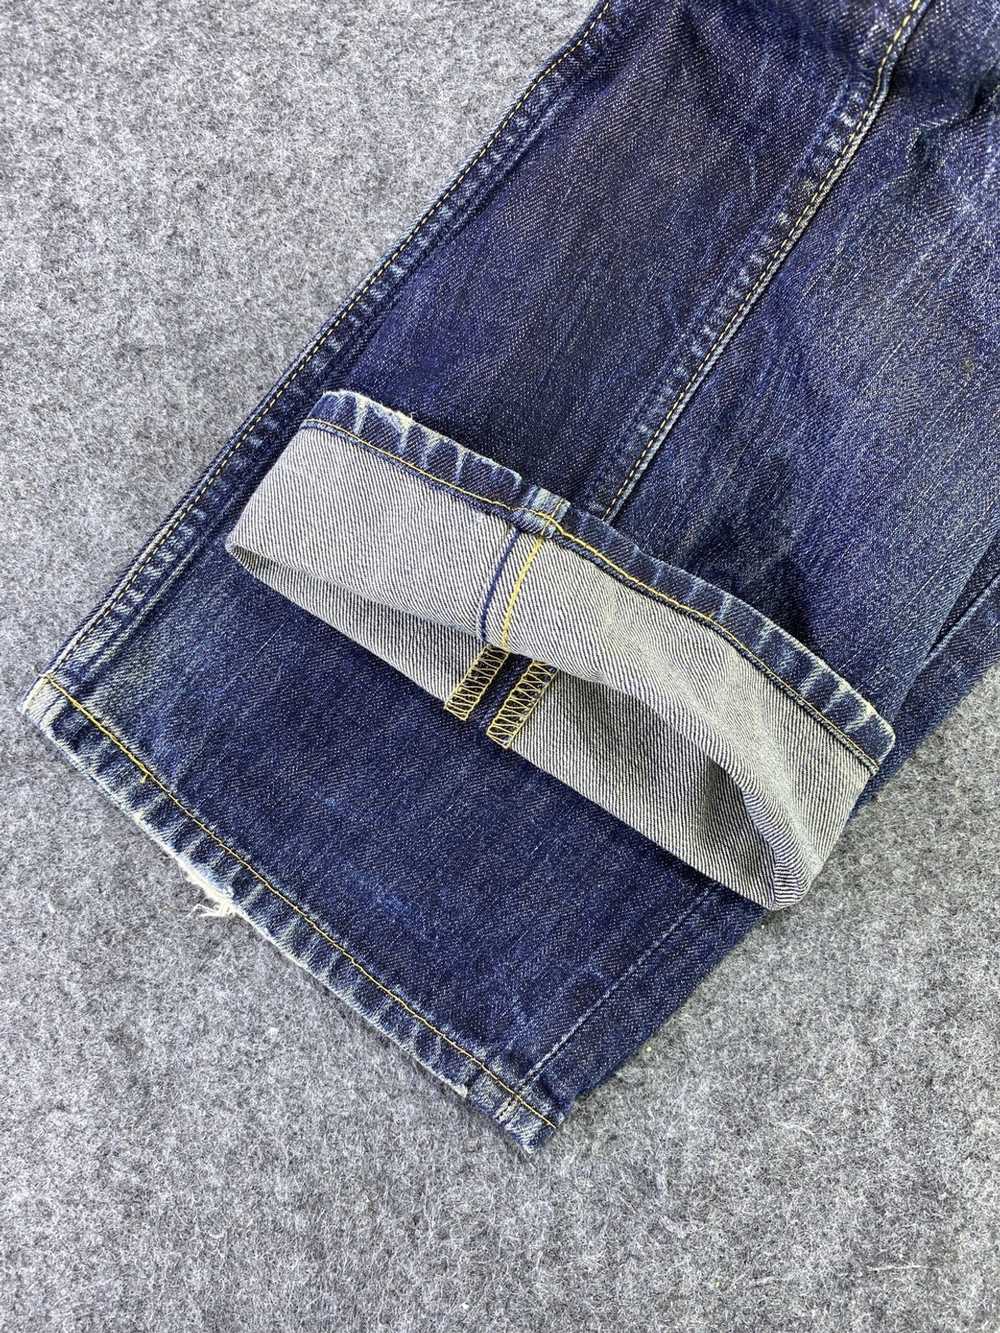 Jean × Levi's × Vintage Vintage Levis 502 Jeans D… - image 6